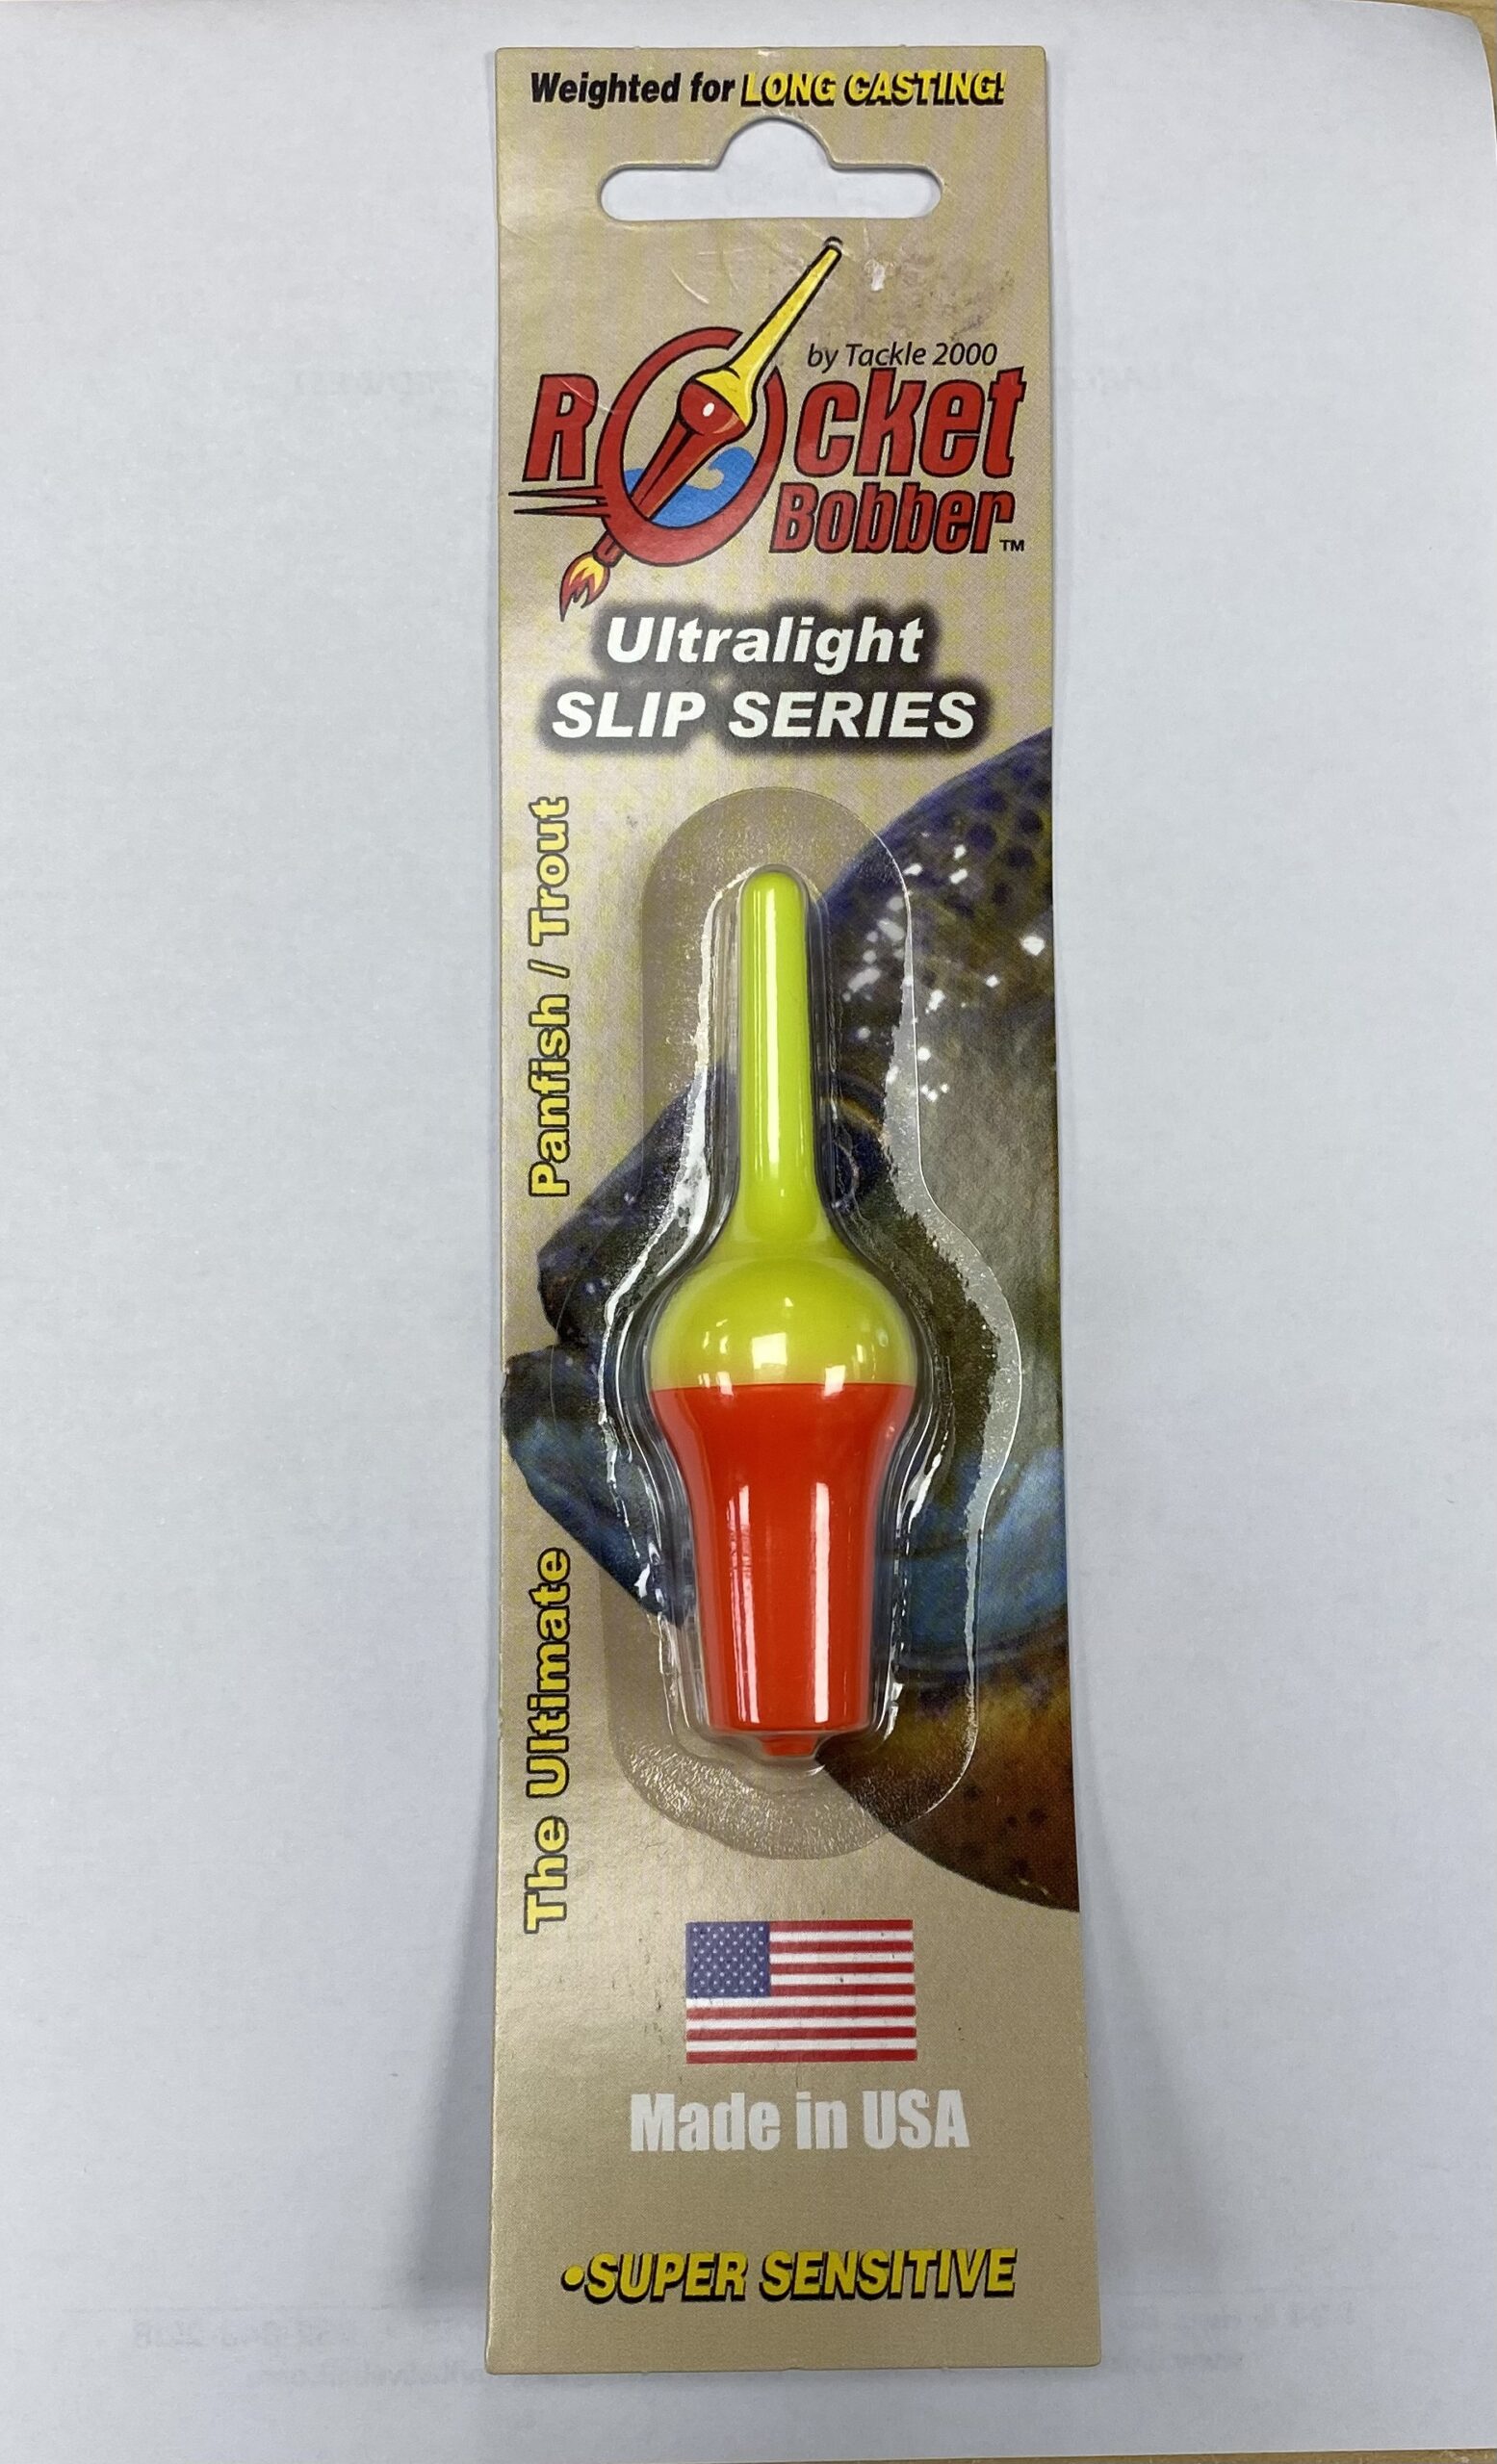 NEW ! Ultralight Slip Series Rocket Bobber